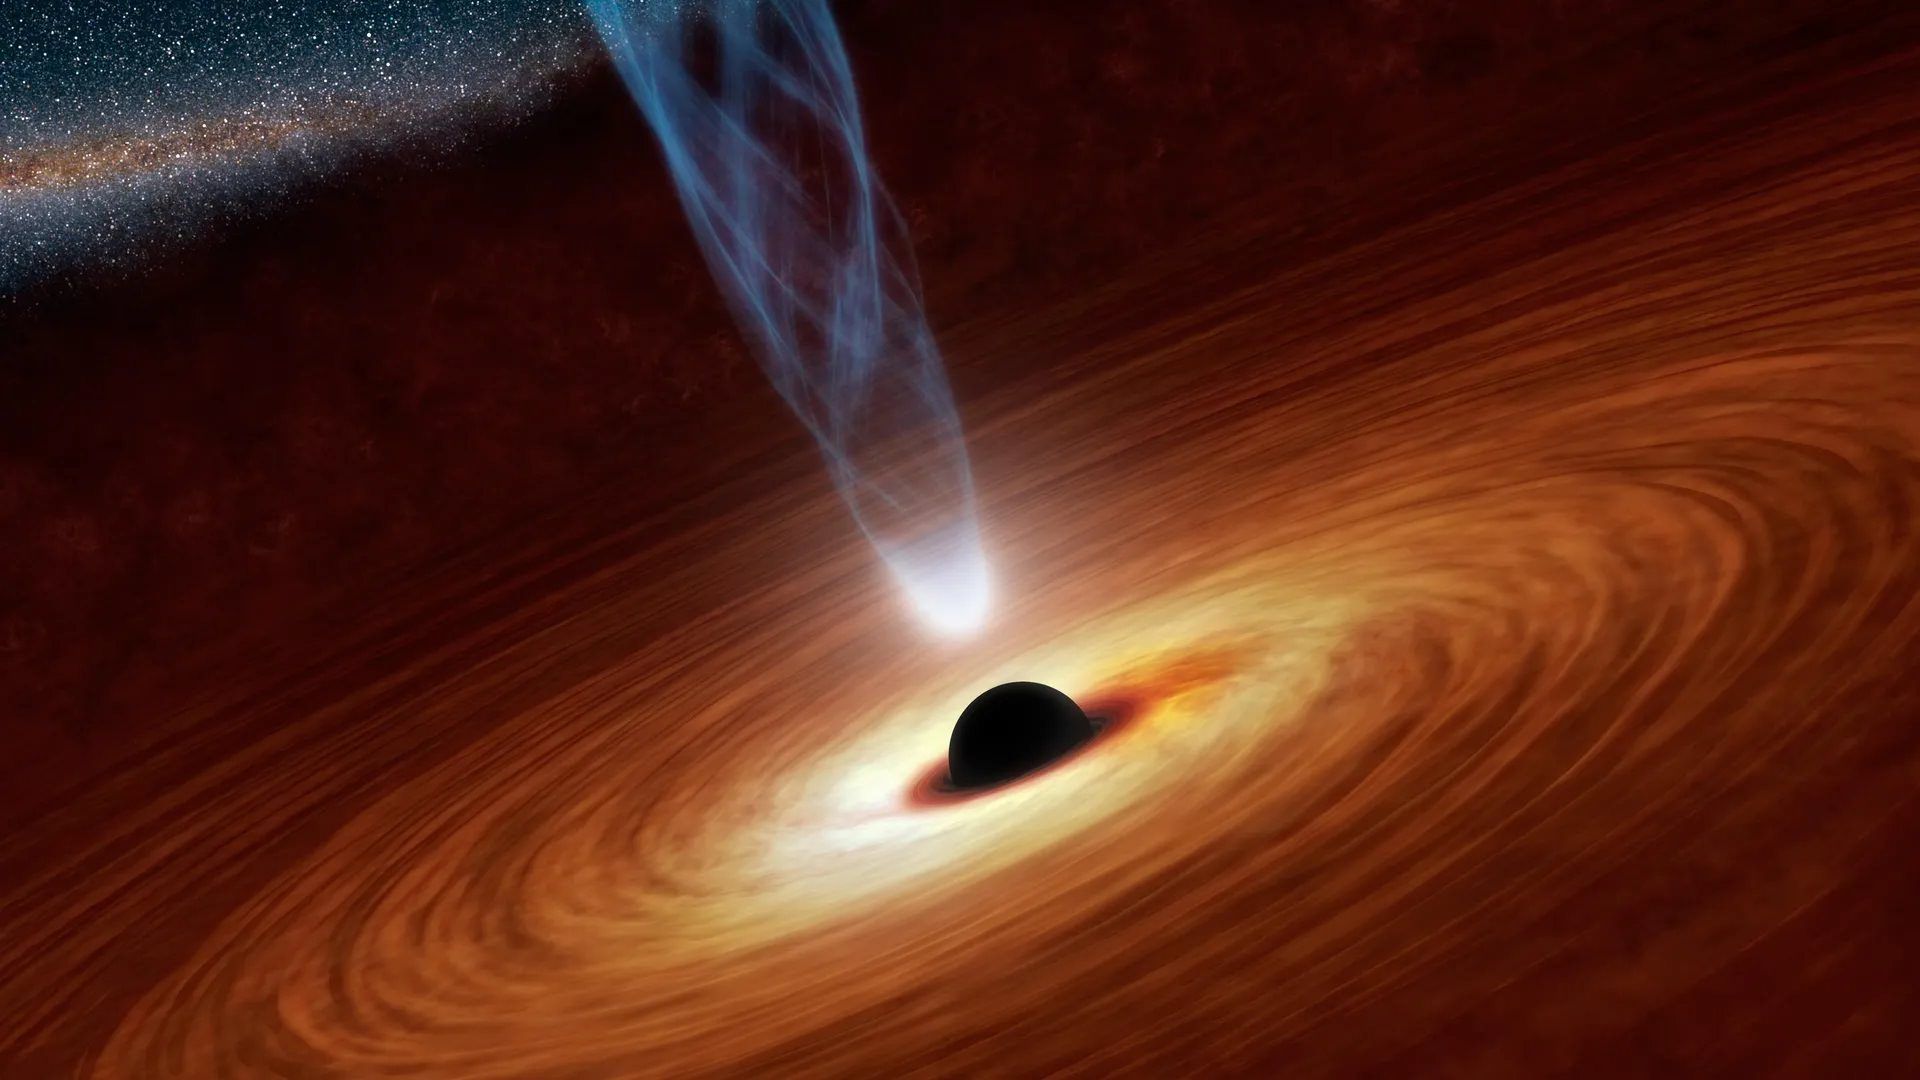 سیاه چاله دراحاطه قرص چرخان گازهای داغ